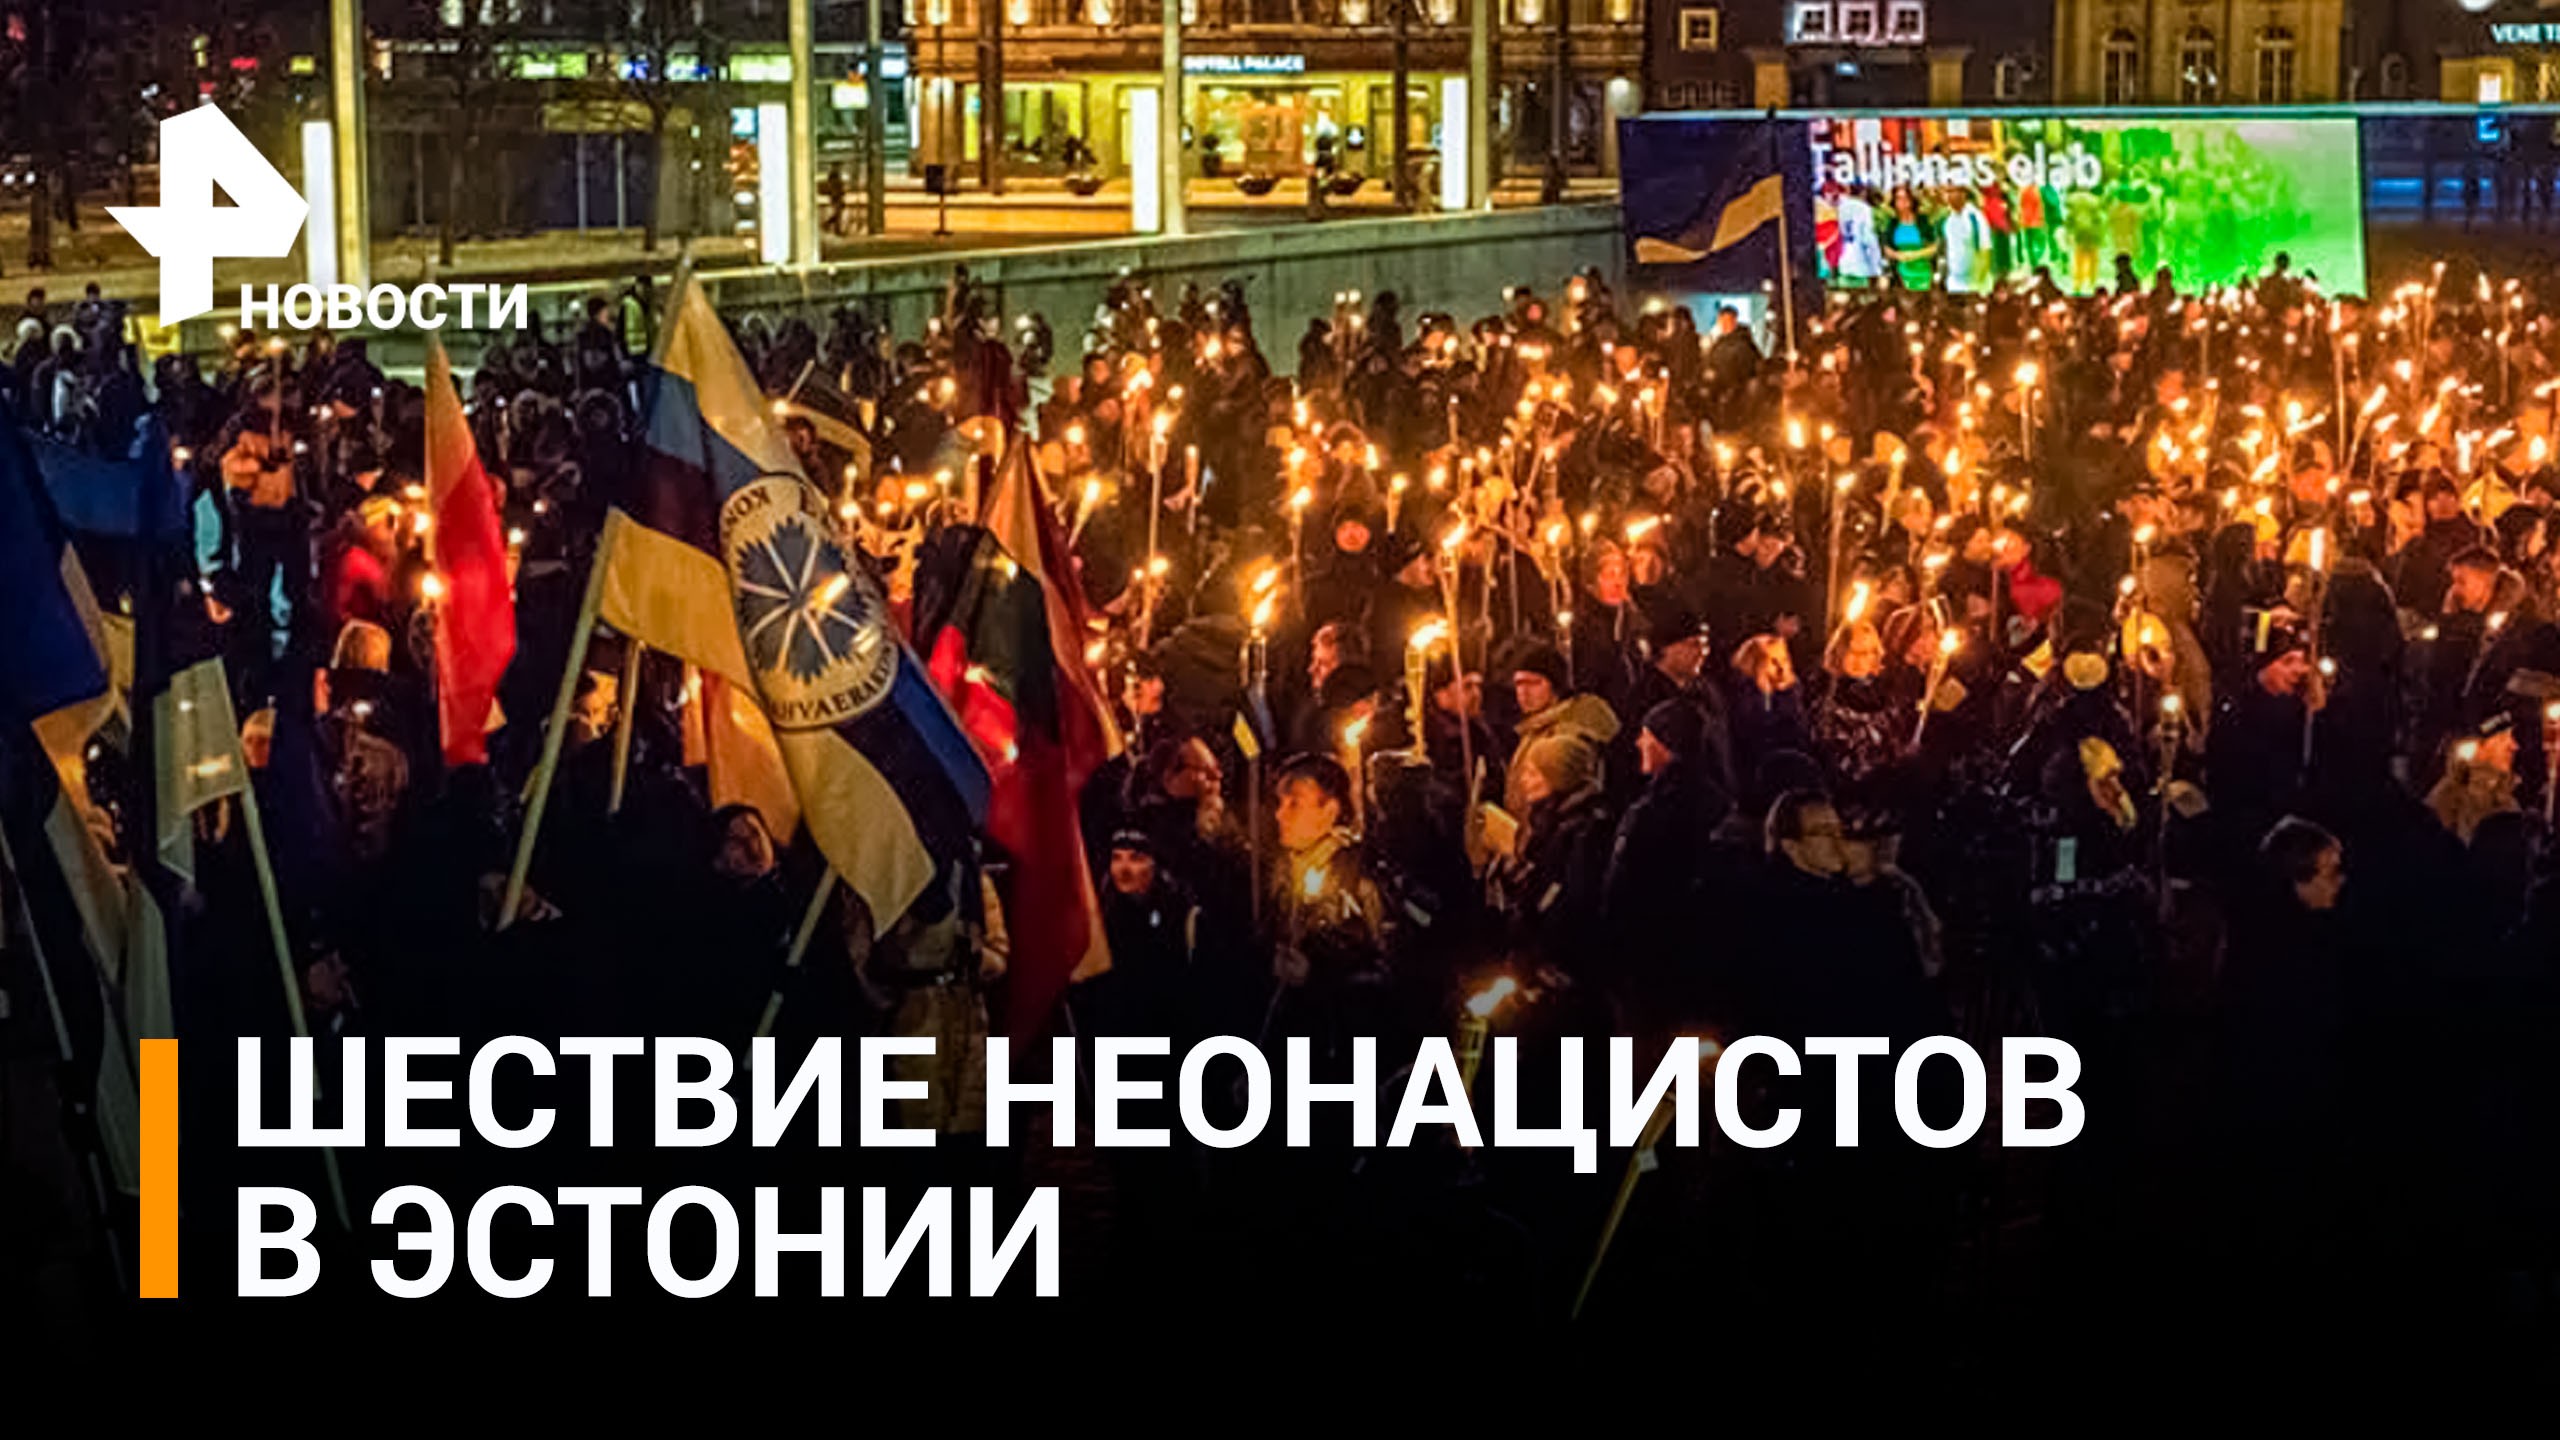 Неонацисты устроили факельное шествие в Эстонии / РЕН Новости